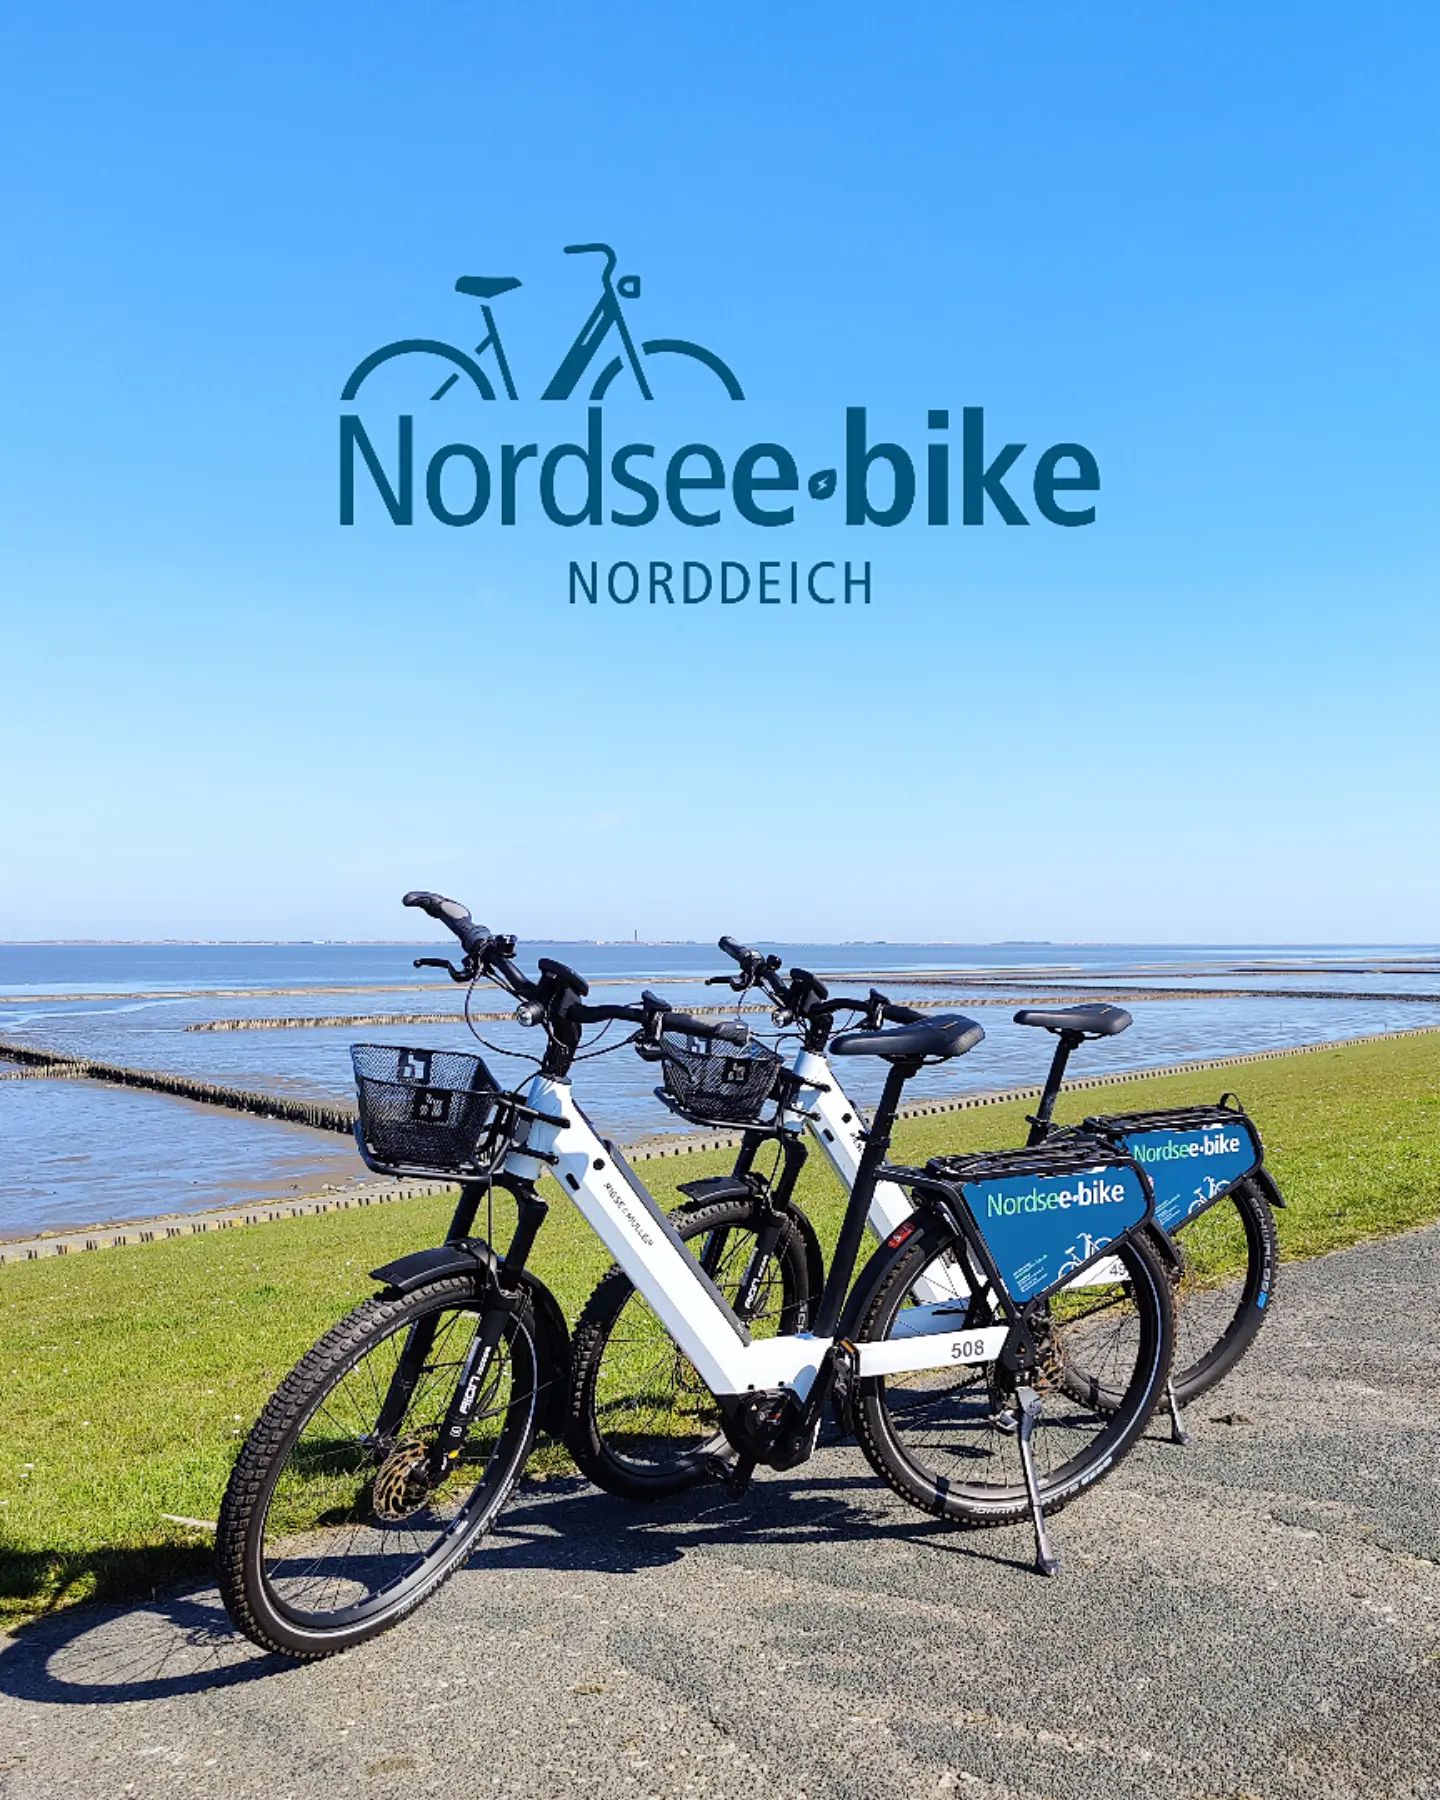 Ab morgen geht es endlich los!🎉🎉 Nordsee-bike Norddeich öffnet seine Tore. 🚴 Ihr findet uns Mittwoch bis Montag von 9:00 -13:00 Uhr und 14:00 - 18:00 Uhr in der Badestraße 1. 📌Euer Nordsee-bike könnt ihr natürlich wie gewohnt über den @frisonaut online buchen! 📲www.nordsee-bike.de/norddeichWir freuen uns auf Euch! 💙